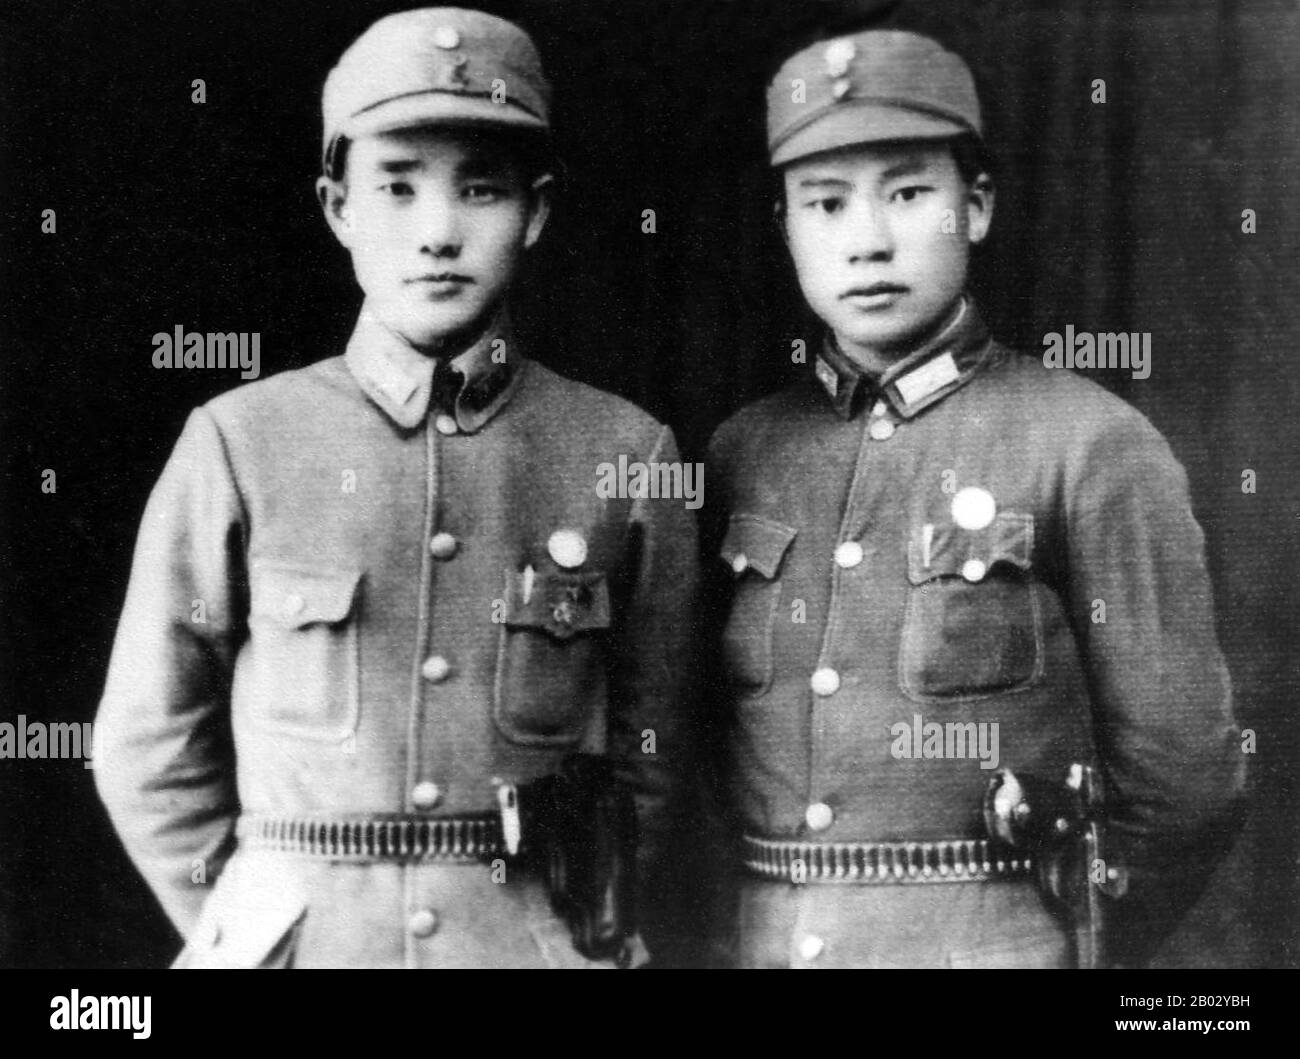 Die chinesische Arbeiter- und Bauern-Rote Armee (Zhongguo Gongnong Hongkong), auch chinesische Rote Armee oder einfach Rote Armee genannt, war eine Gruppenarmee unter dem Kommando der Kommunistischen Partei Chinas. Die Rote Armee der chinesischen Arbeiter und Bauern wurde am 25. Mai 1928 im Ersten chinesischen Bürgerkrieg gegründet. Zwischen 1934 und 1935 überstand die Rote Armee mehrere Feldzüge gegen die nationalistischen Kräfte, die vom Generalissimo Chiang Kai-Schek angeführt und am Langen Marsch beteiligt waren. Bis zum langen Marsch von 1934 waren zahlreiche kleine Einheiten zu drei einheitlichen Gruppen organisiert worden, dem Ersten Roten Ar Stockfoto